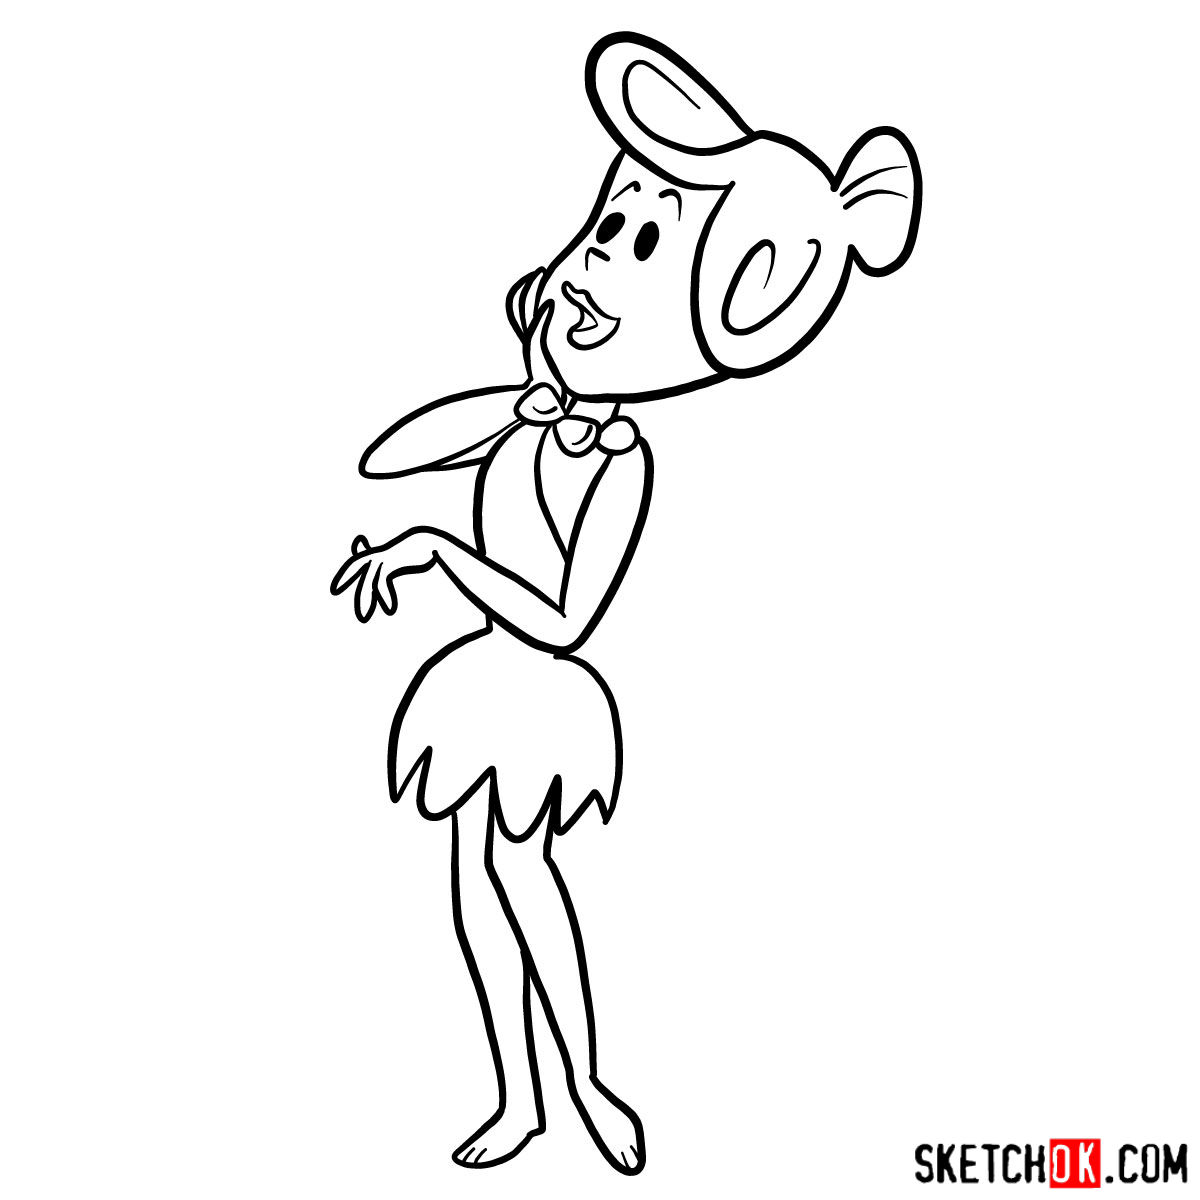 How to draw Wilma Flintstone - step 11